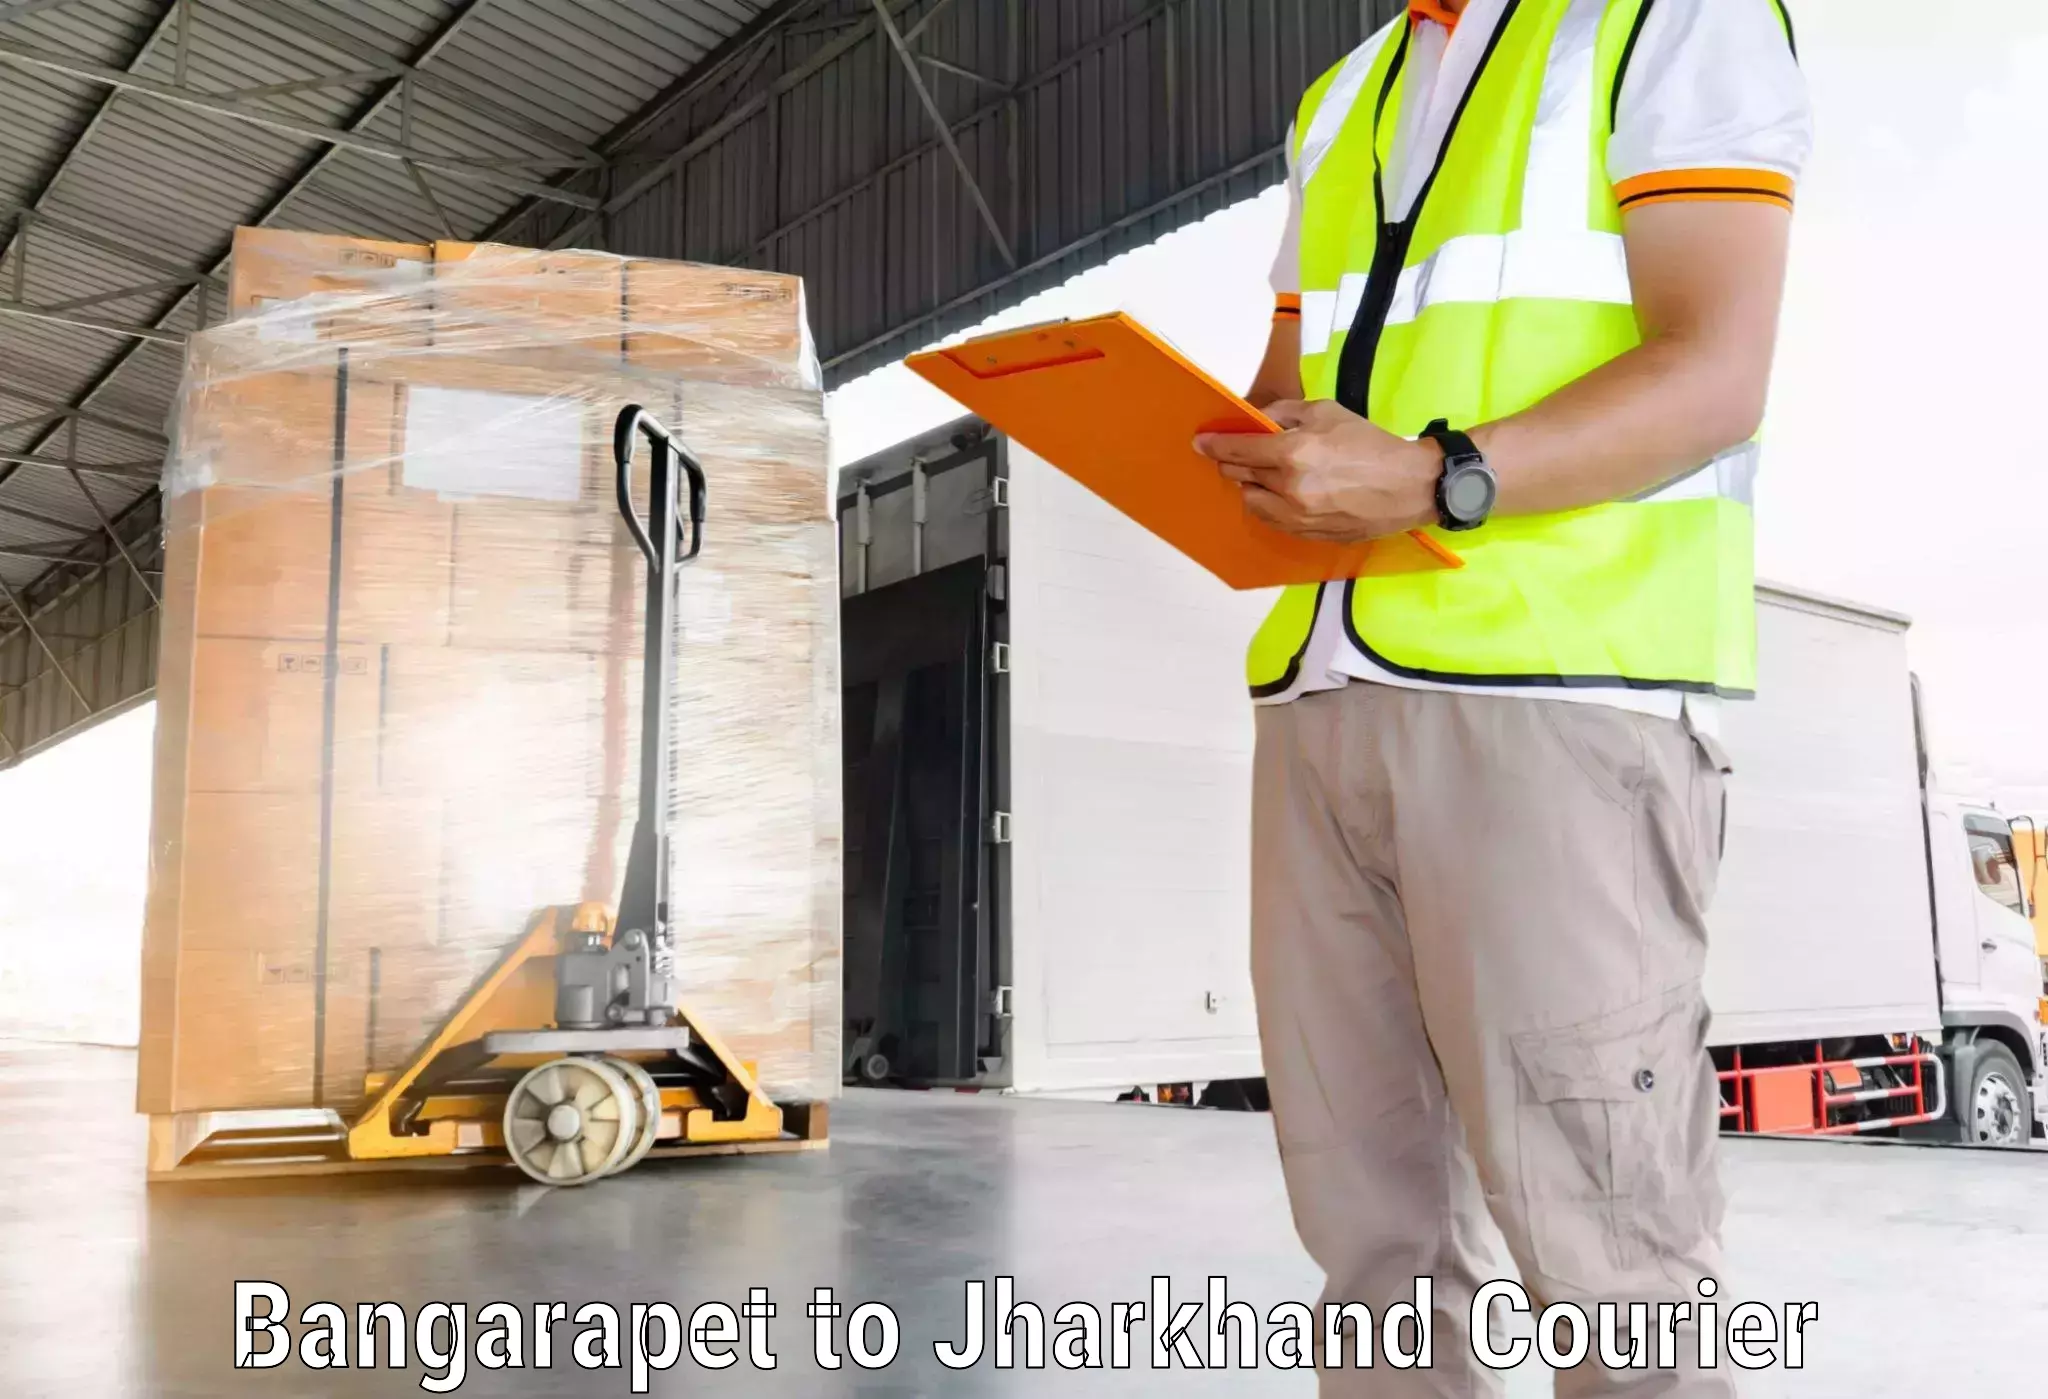 Courier service comparison Bangarapet to Pakur